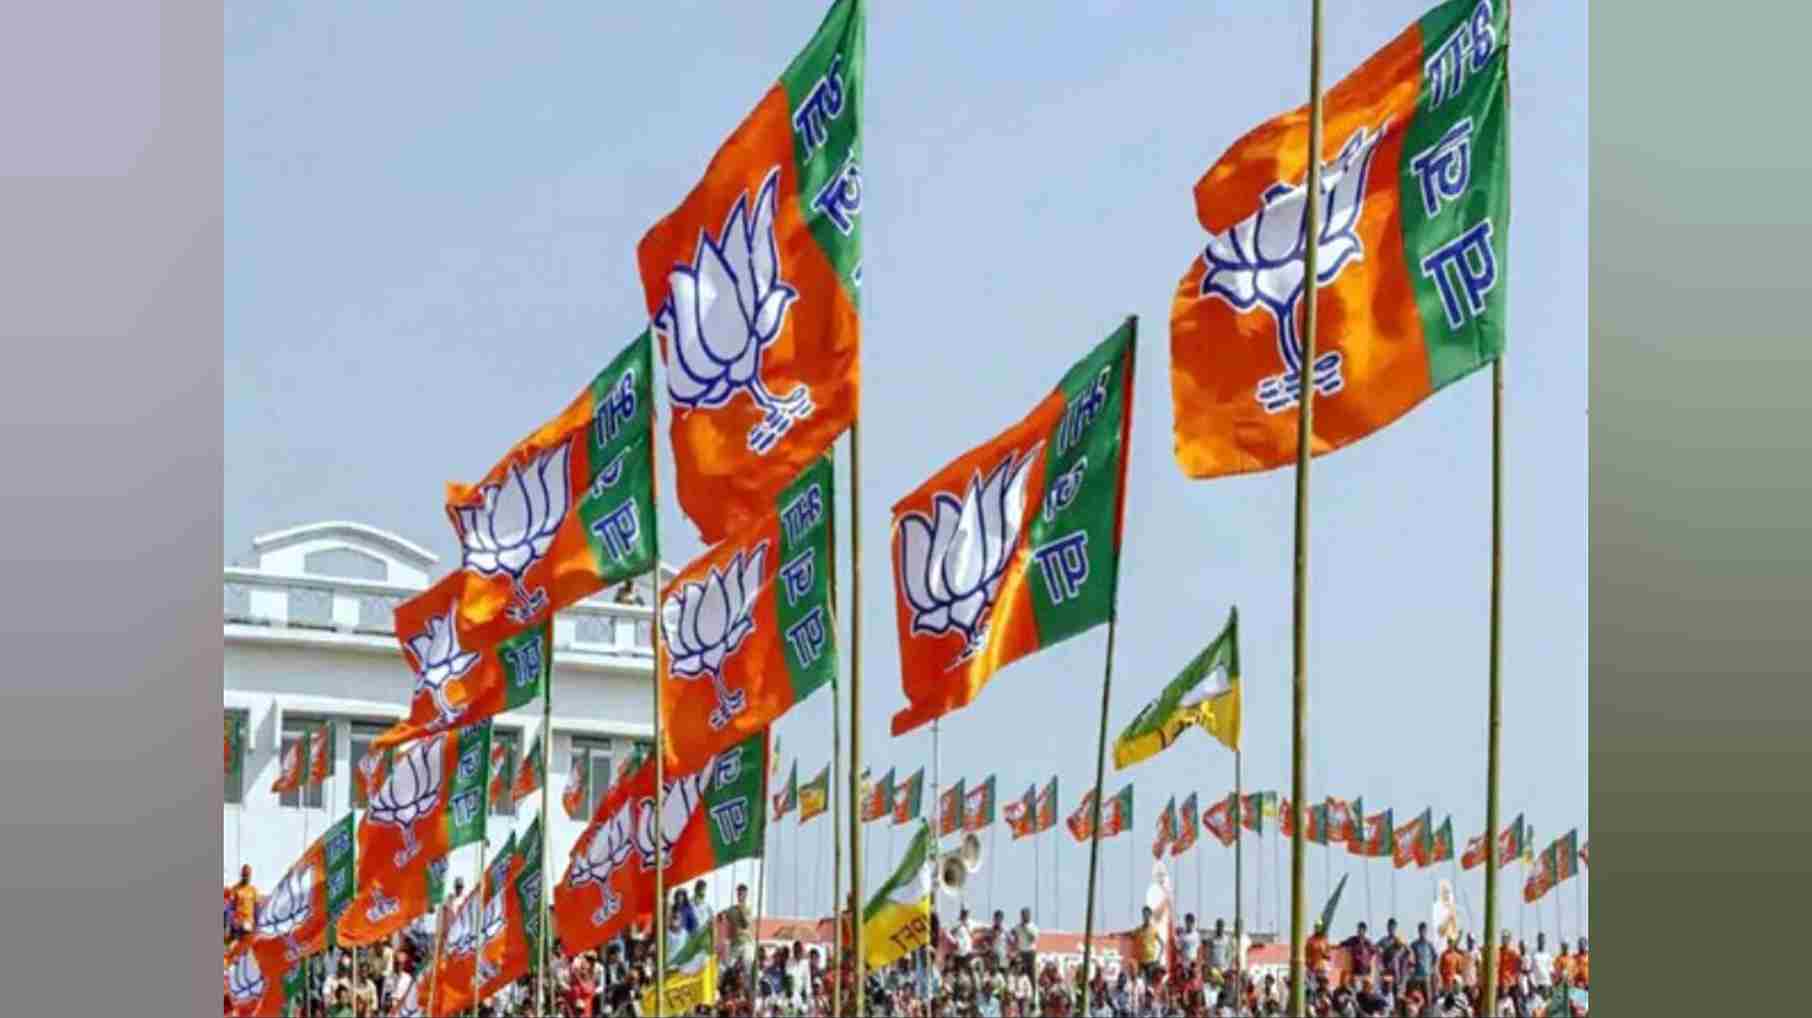 भाजपा पंजाब में अपने दम पर लोकसभा चुनाव लड़ेगी: राज्य भाजपा प्रमुख सुनील जाखड़